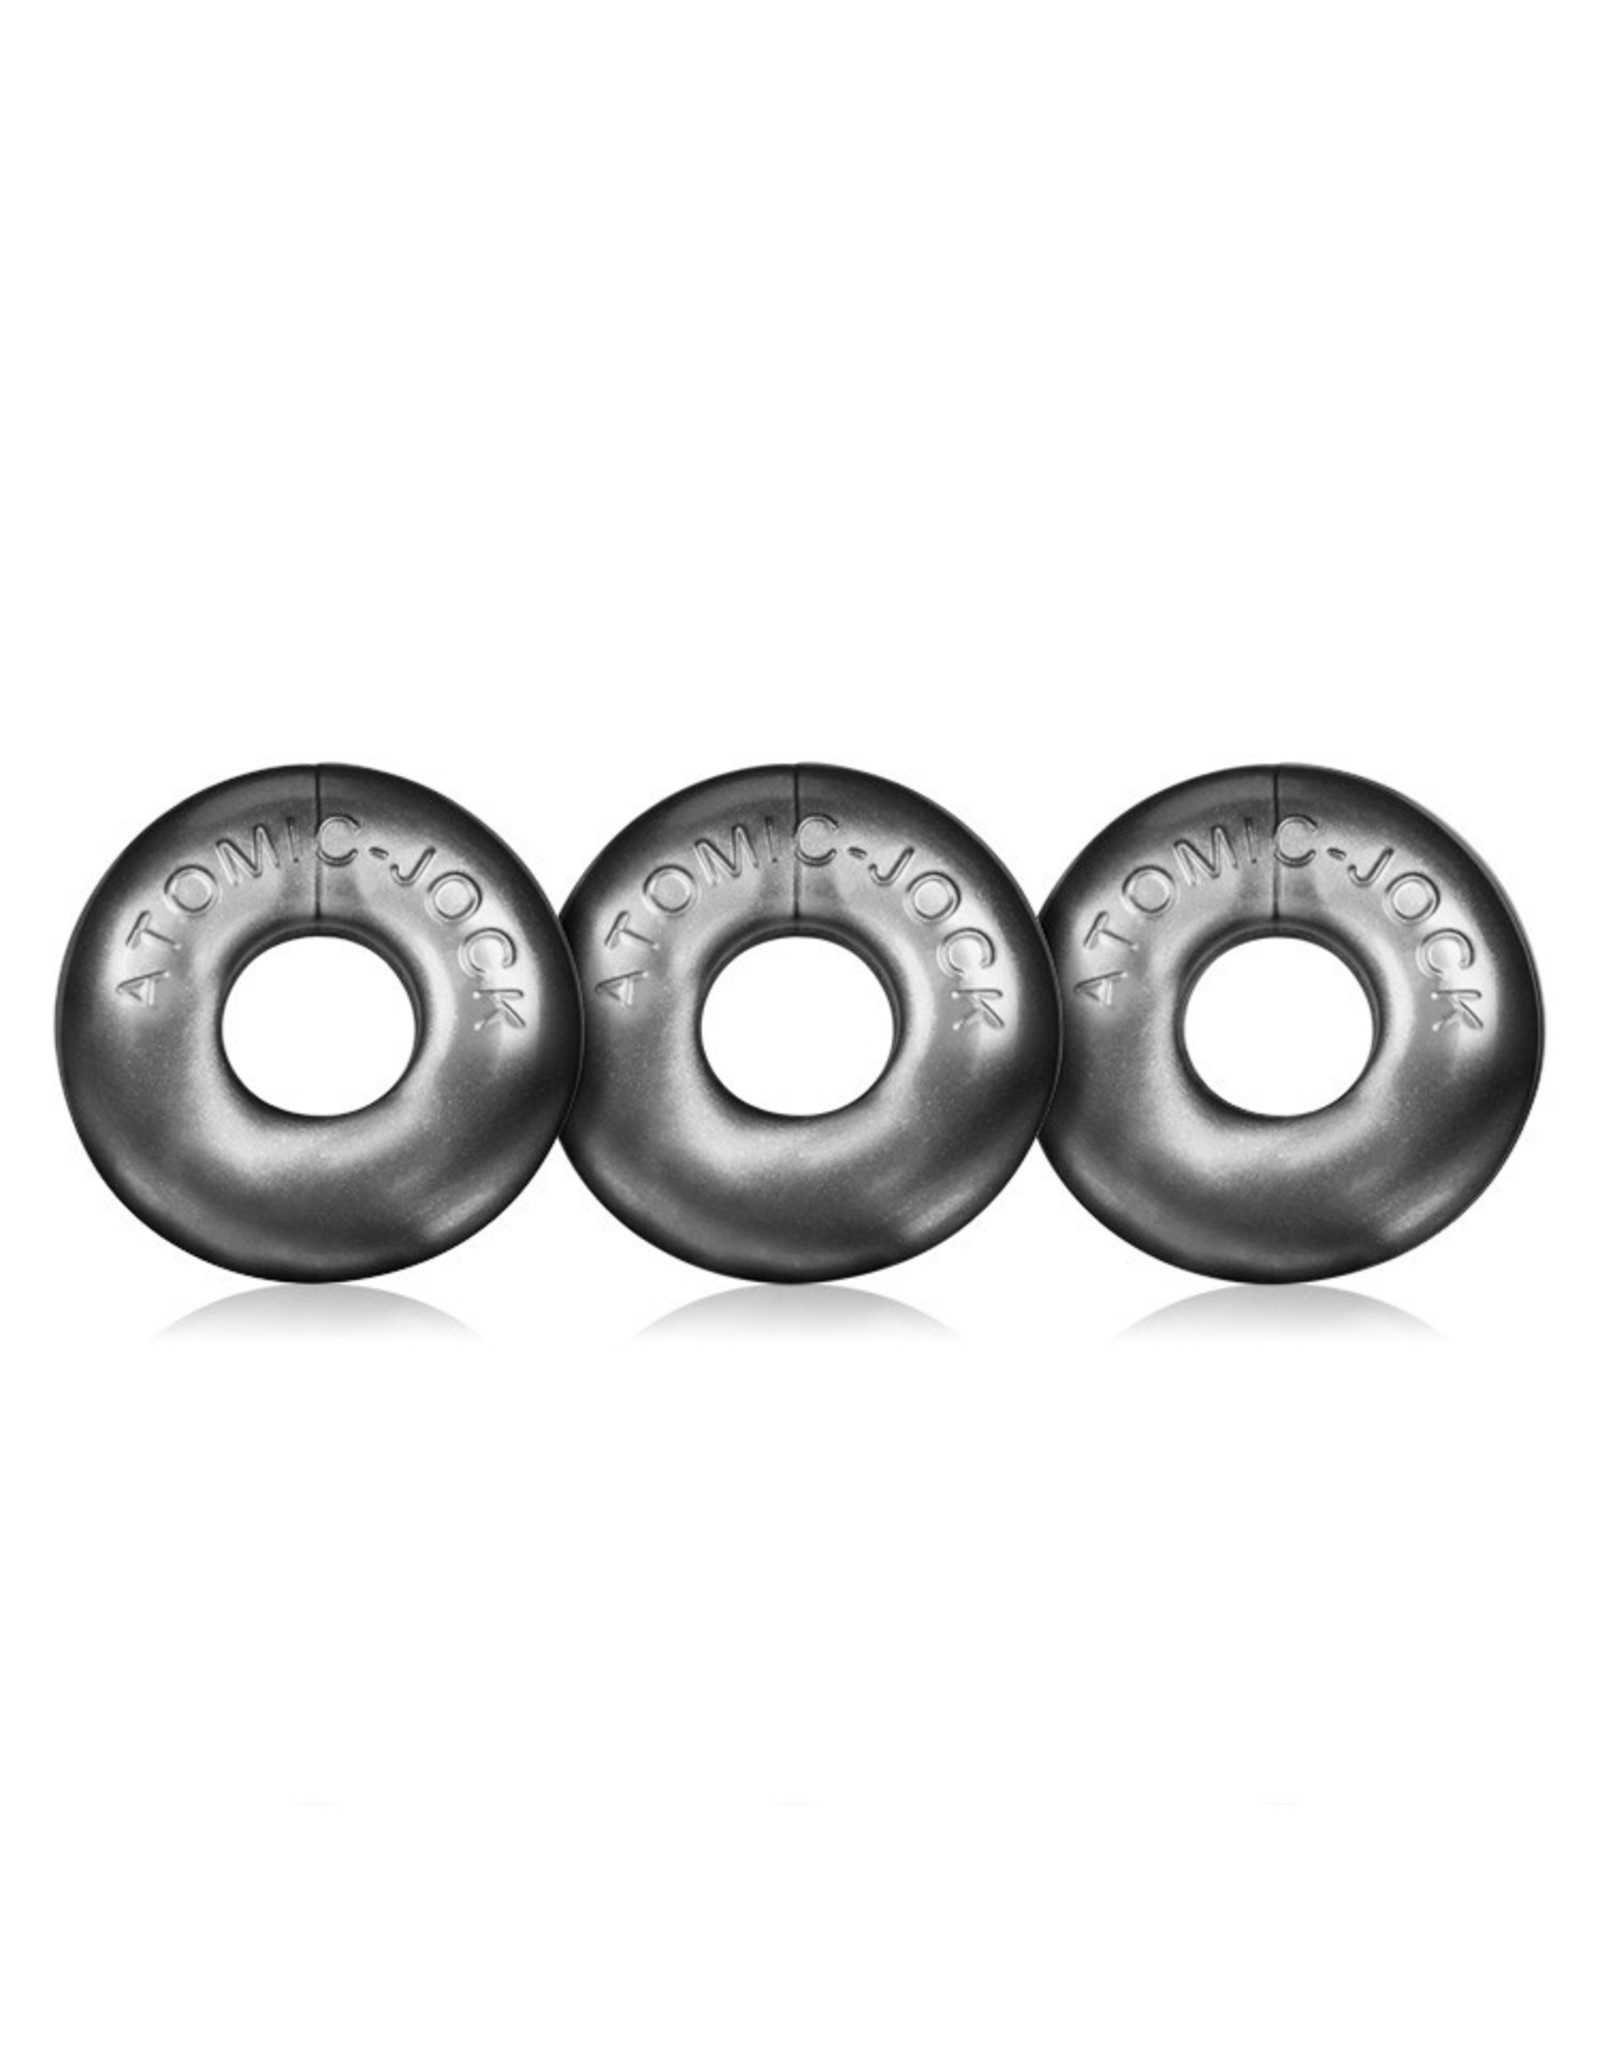 OXBALLS Oxballs Ringer 3 Pack Cock Ring